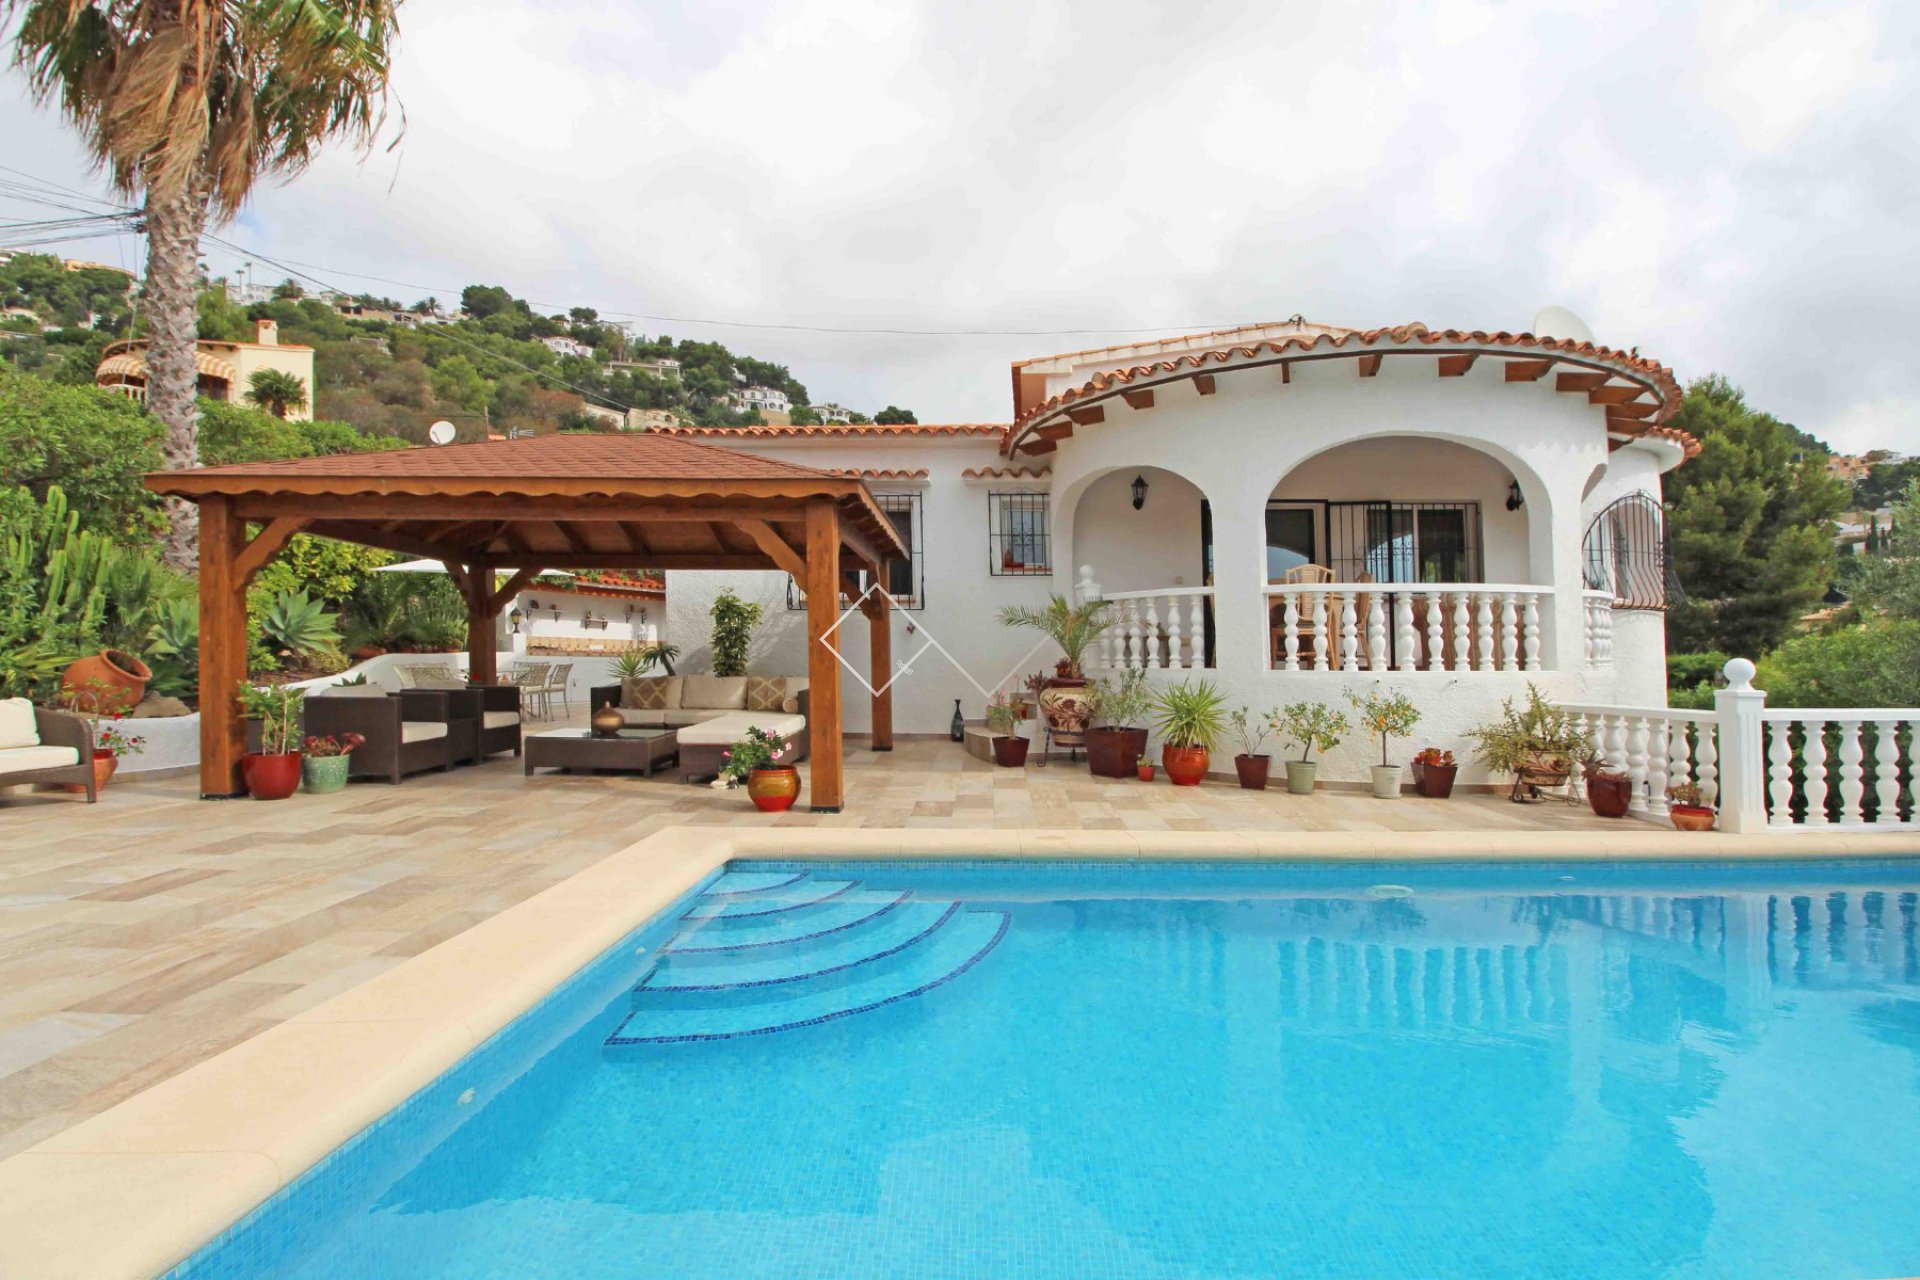 Pool gazebo - Ausgezeichnete Villa zu verkaufen in Montemar, Benissa